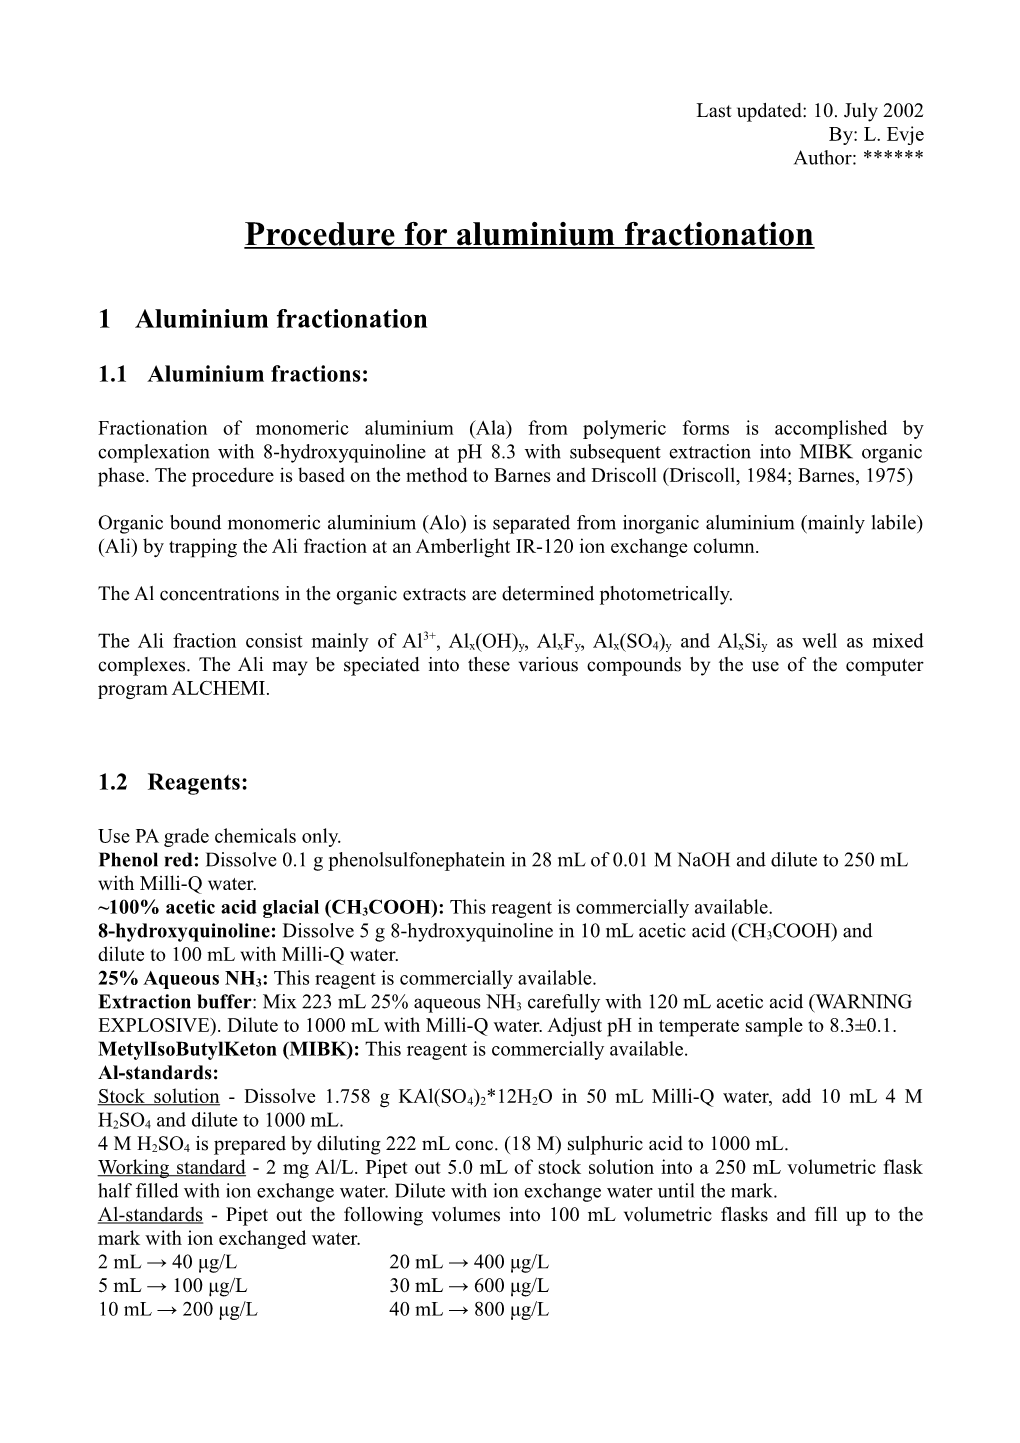 Procedure for Aluminium Fractionation